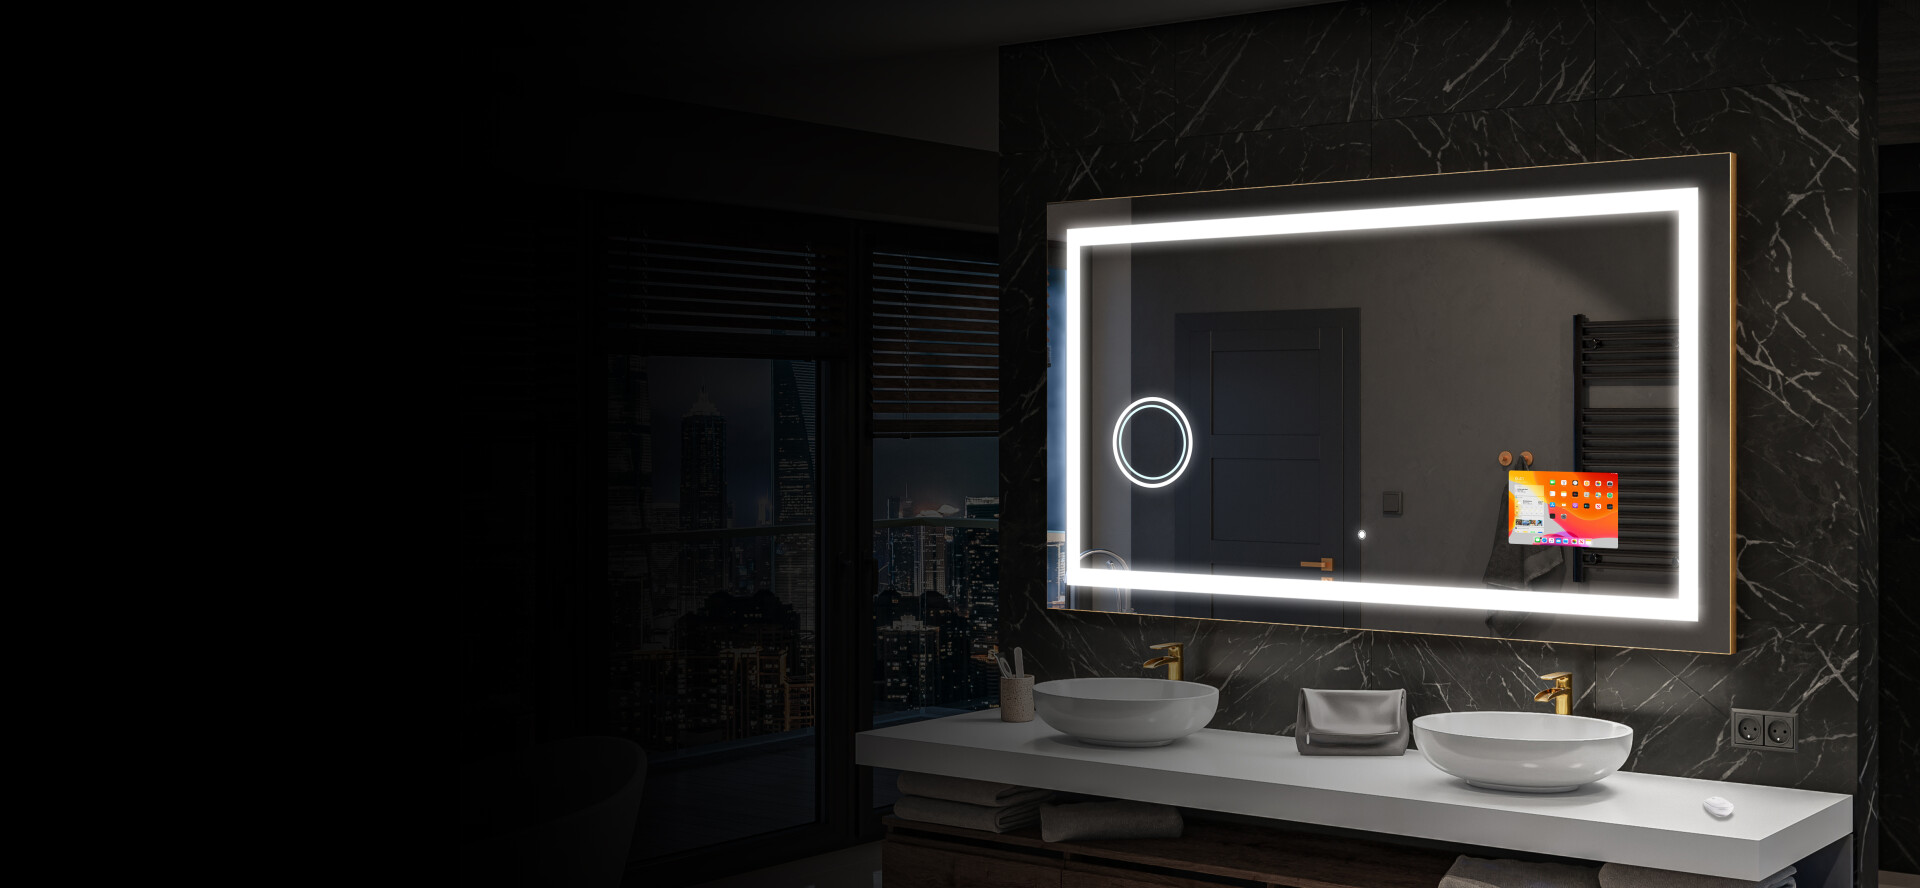 Artforma - Specchio a LED Mezza Luna Moderno - Illuminazione